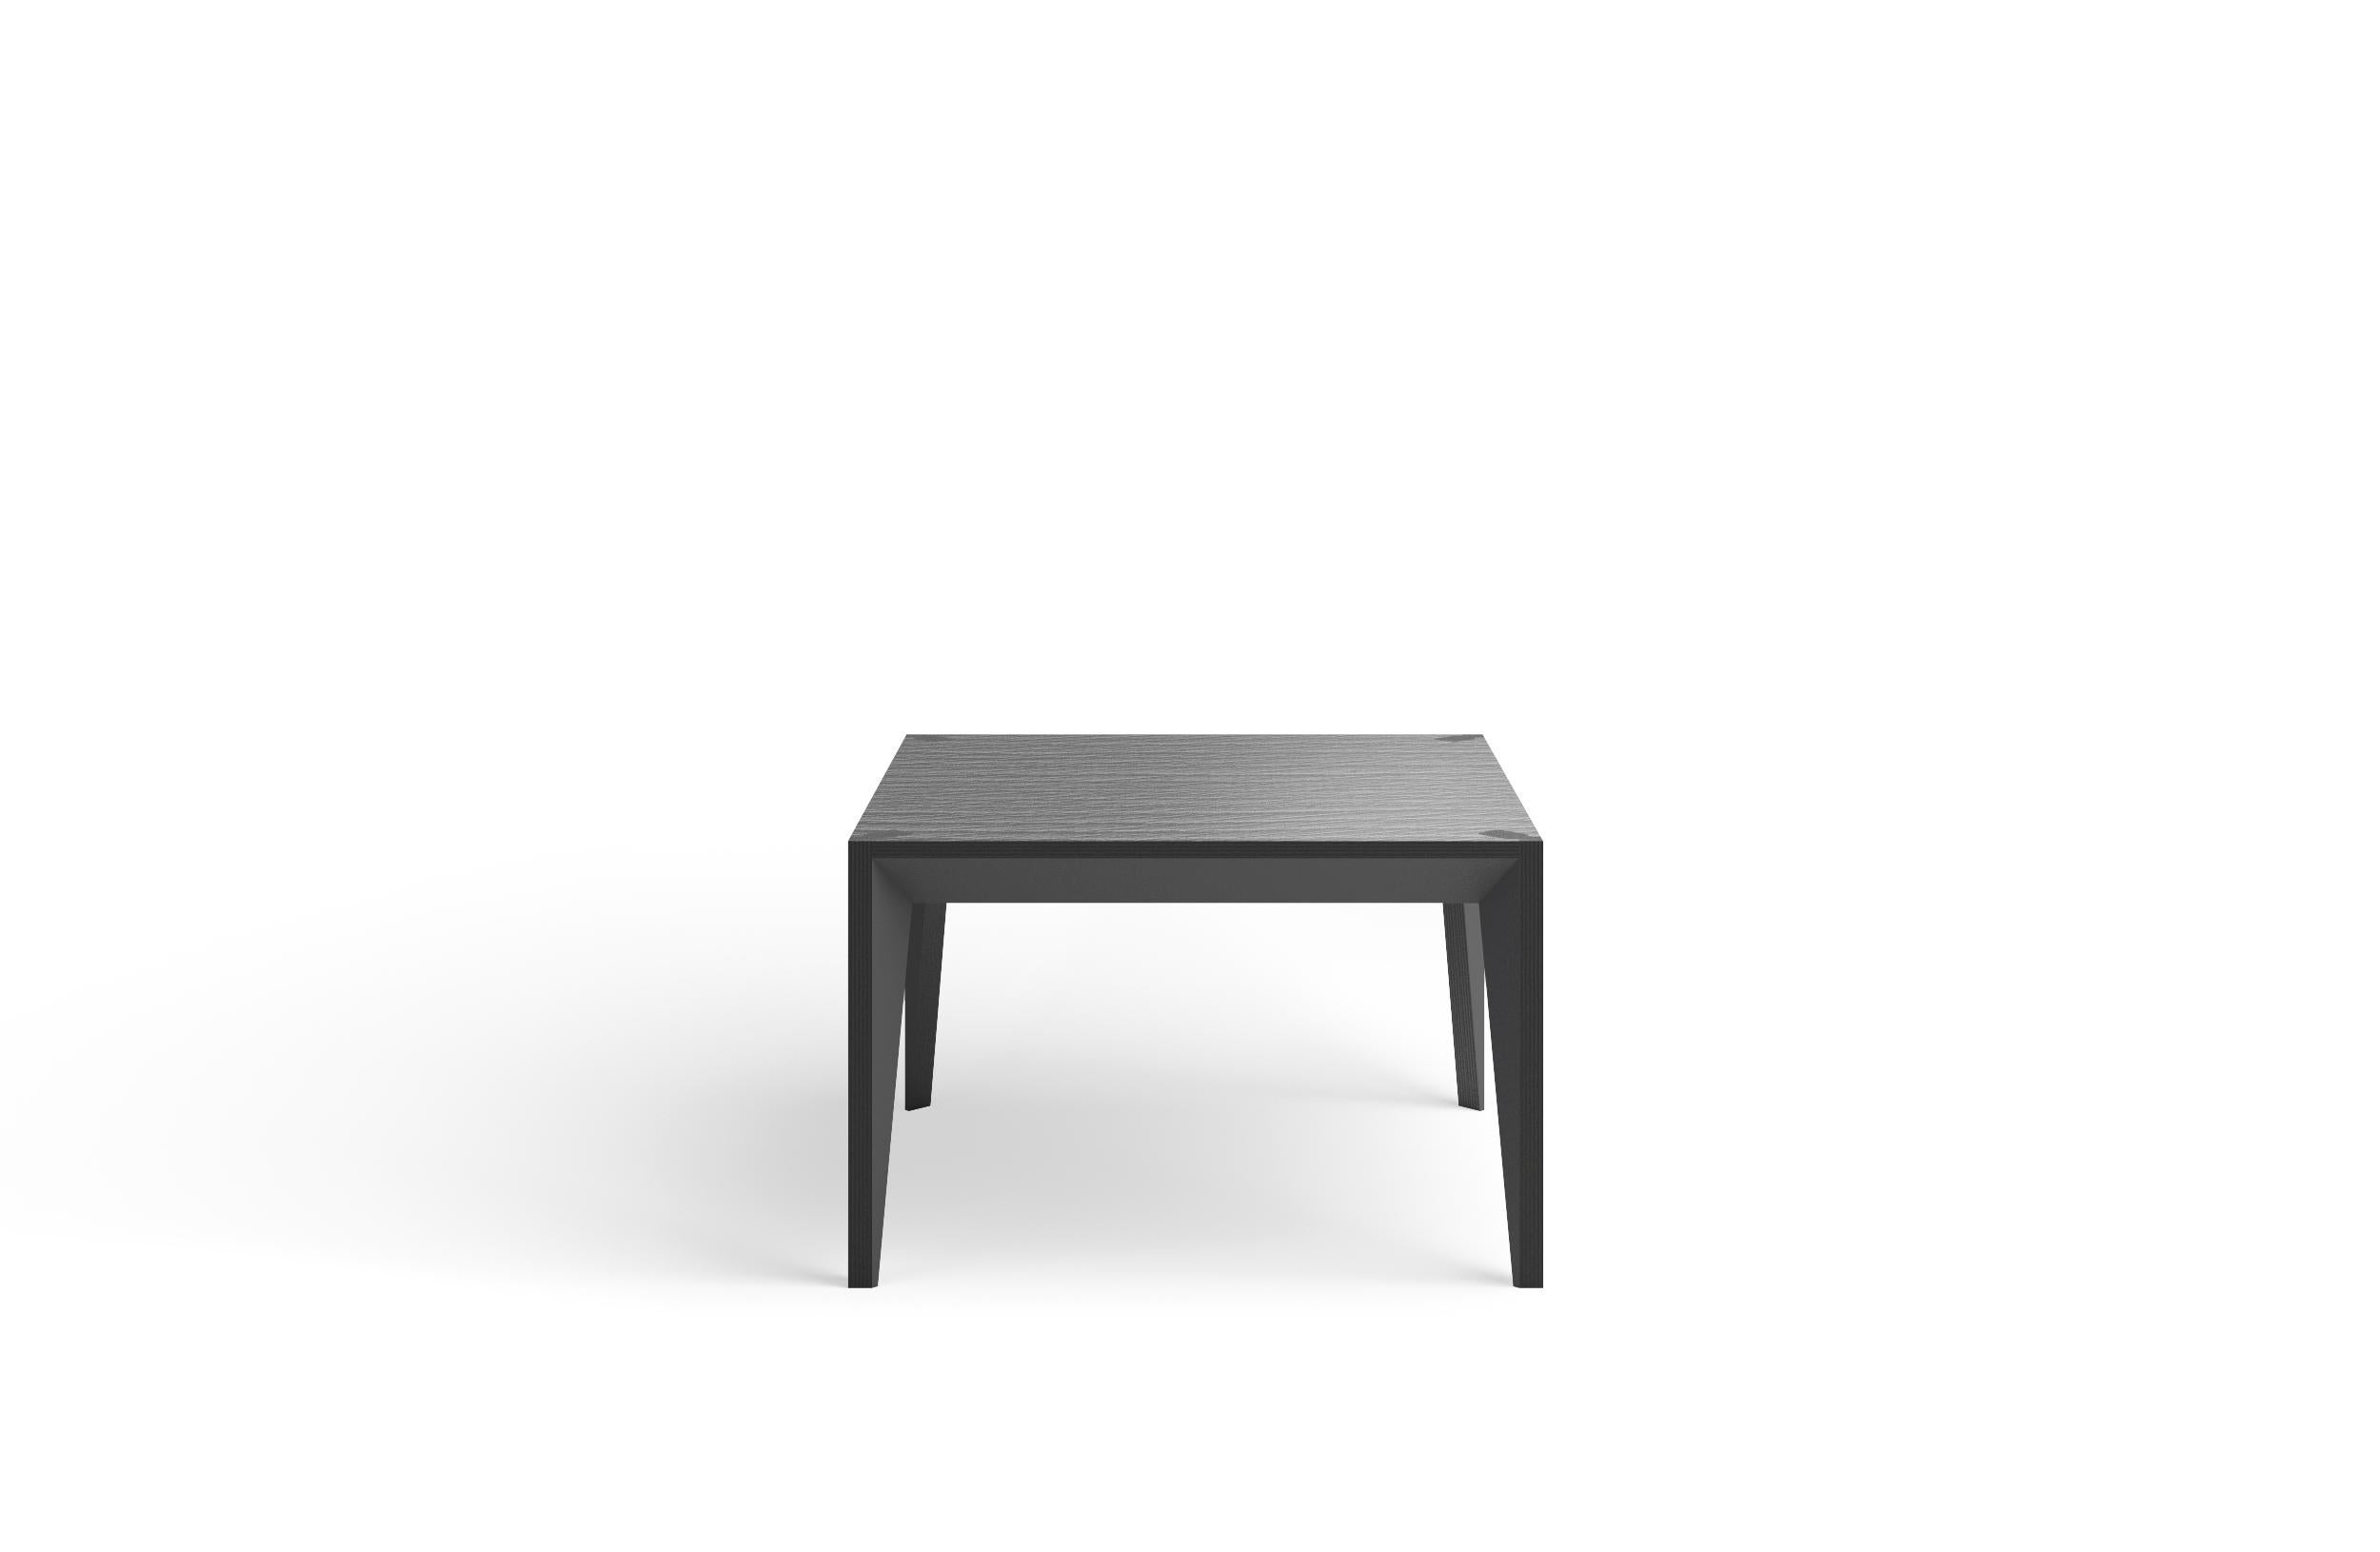 Fusionnant des lignes épurées et des matériaux chaleureux, la géométrie à facettes de la table basse carrée MiMi crée un profil élancé et élégant ponctué de surfaces peintes qui captent la lumière. Ce design moderne et gracieux, fabriqué à la main,